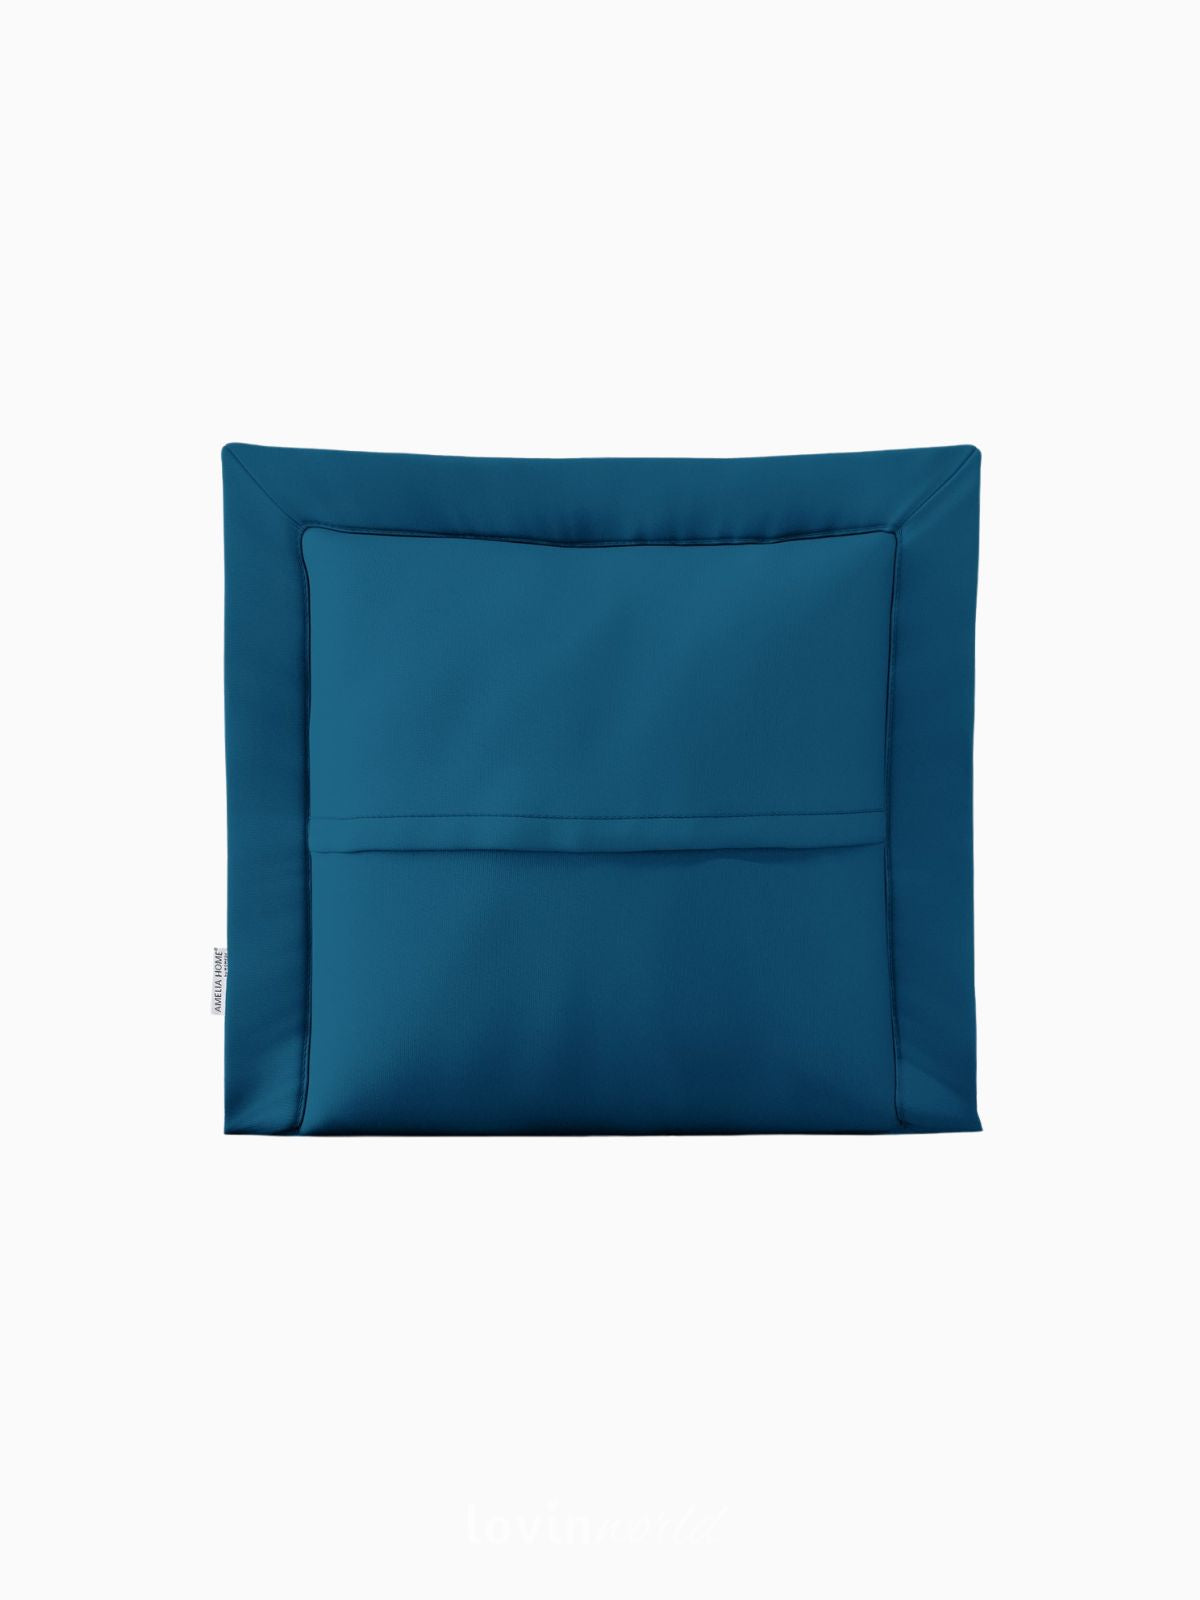 Cuscino decorativo Ophelia in colore blu 45x45 cm.-3